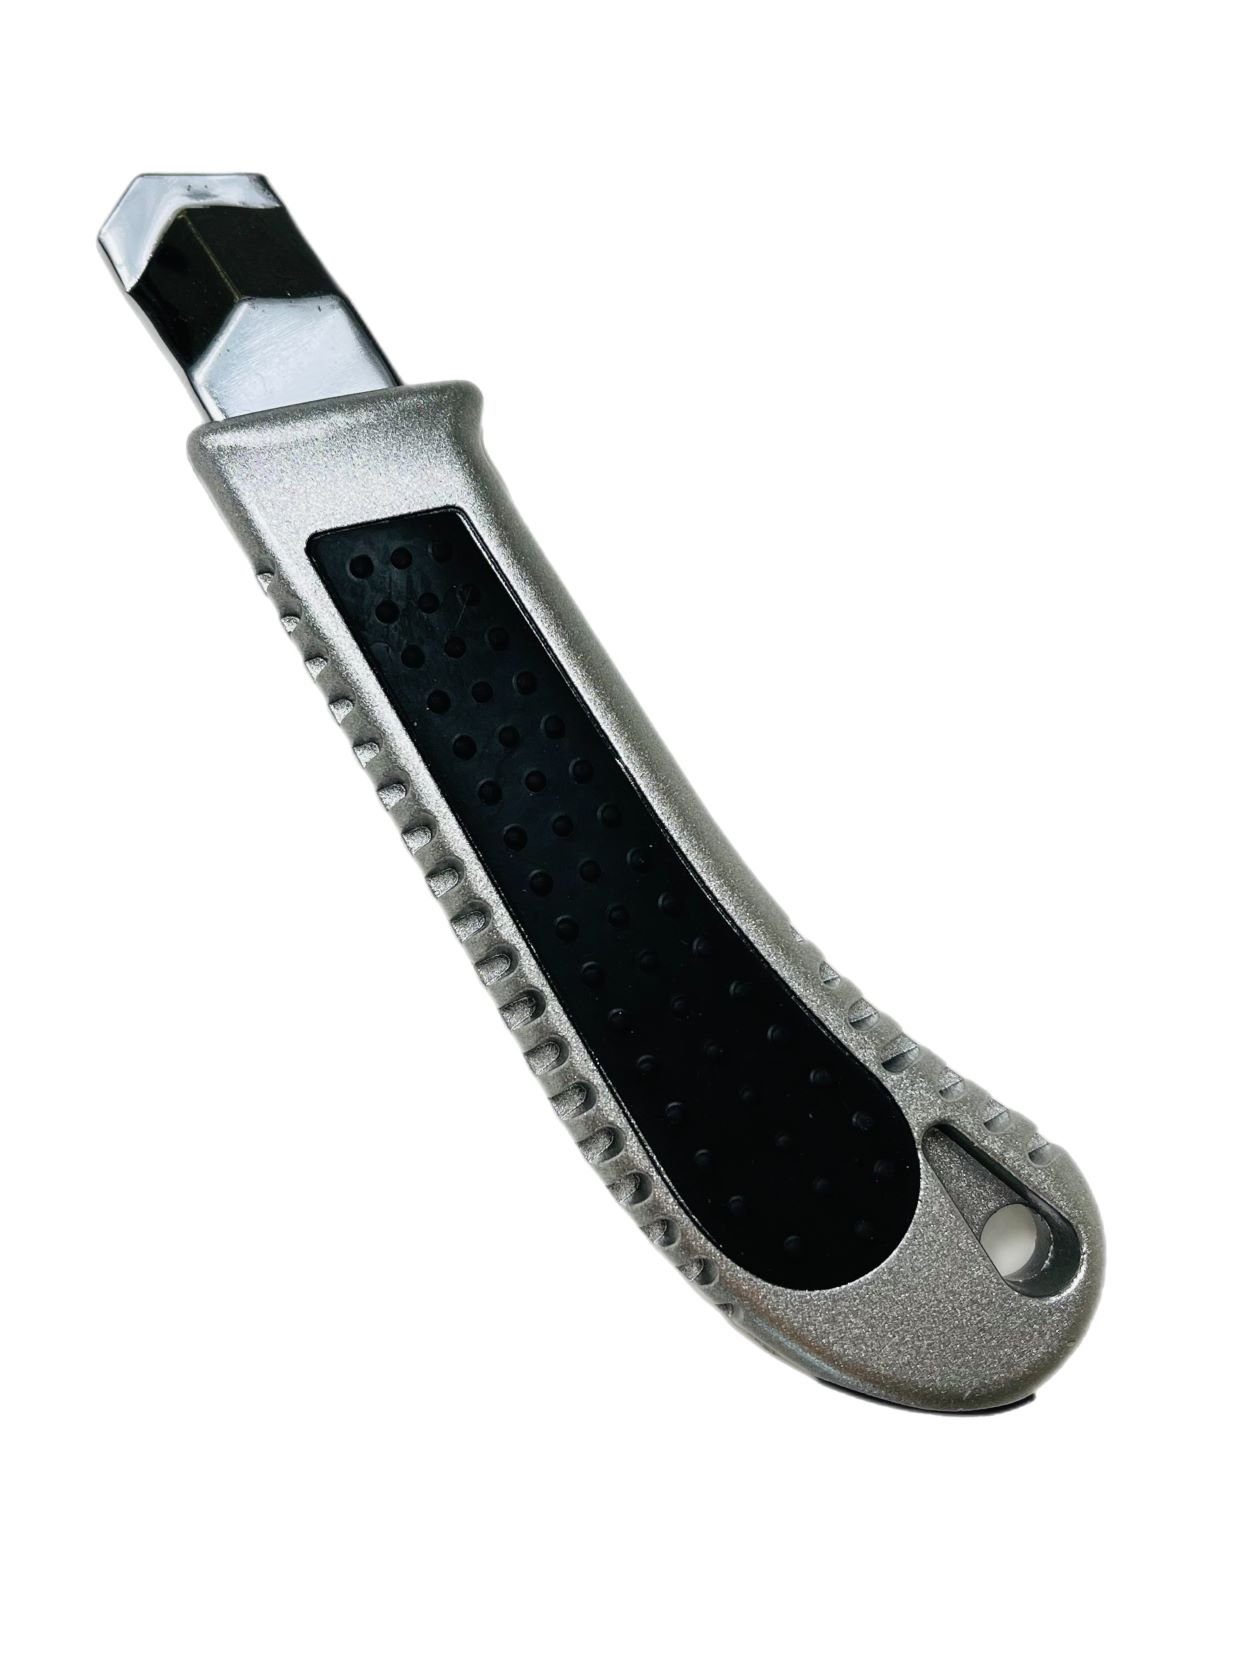 VaGo-Tools Teppichmesser Teppichmesser Cutter 18mm Stück, 144 (Packung) Cuttermesser